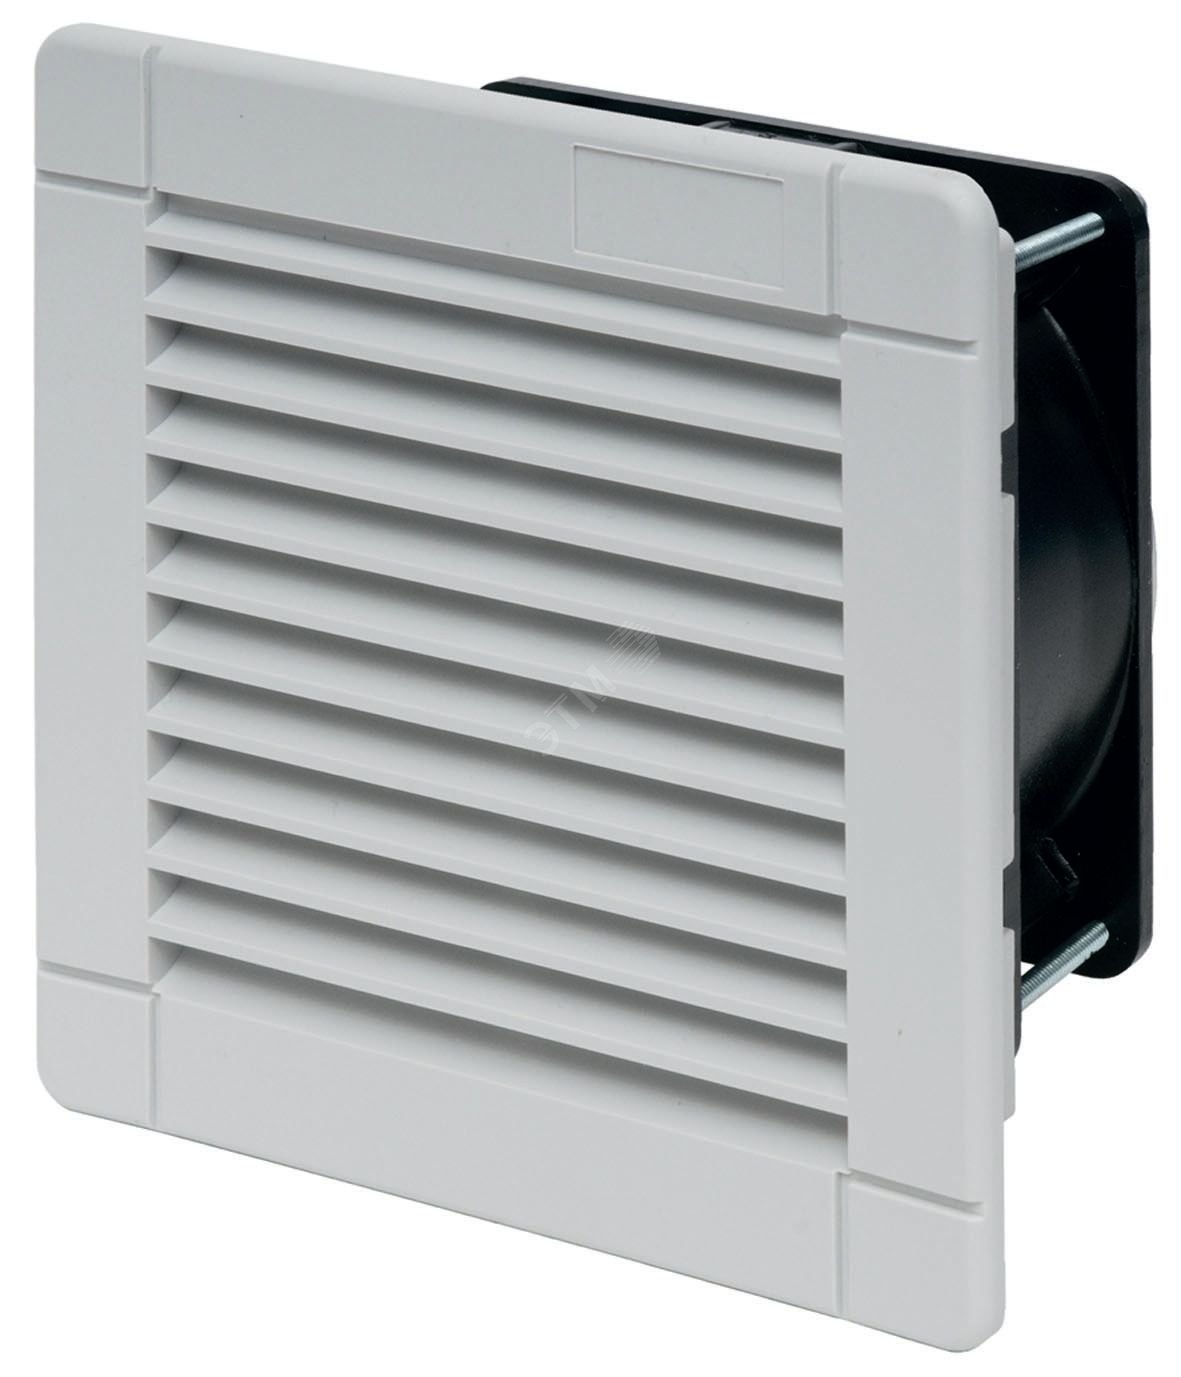 Вентилятор с фильтром стандартная версия питание 24В DС расход воздуха 100м3/ч IP54 7F5090243100 FINDER